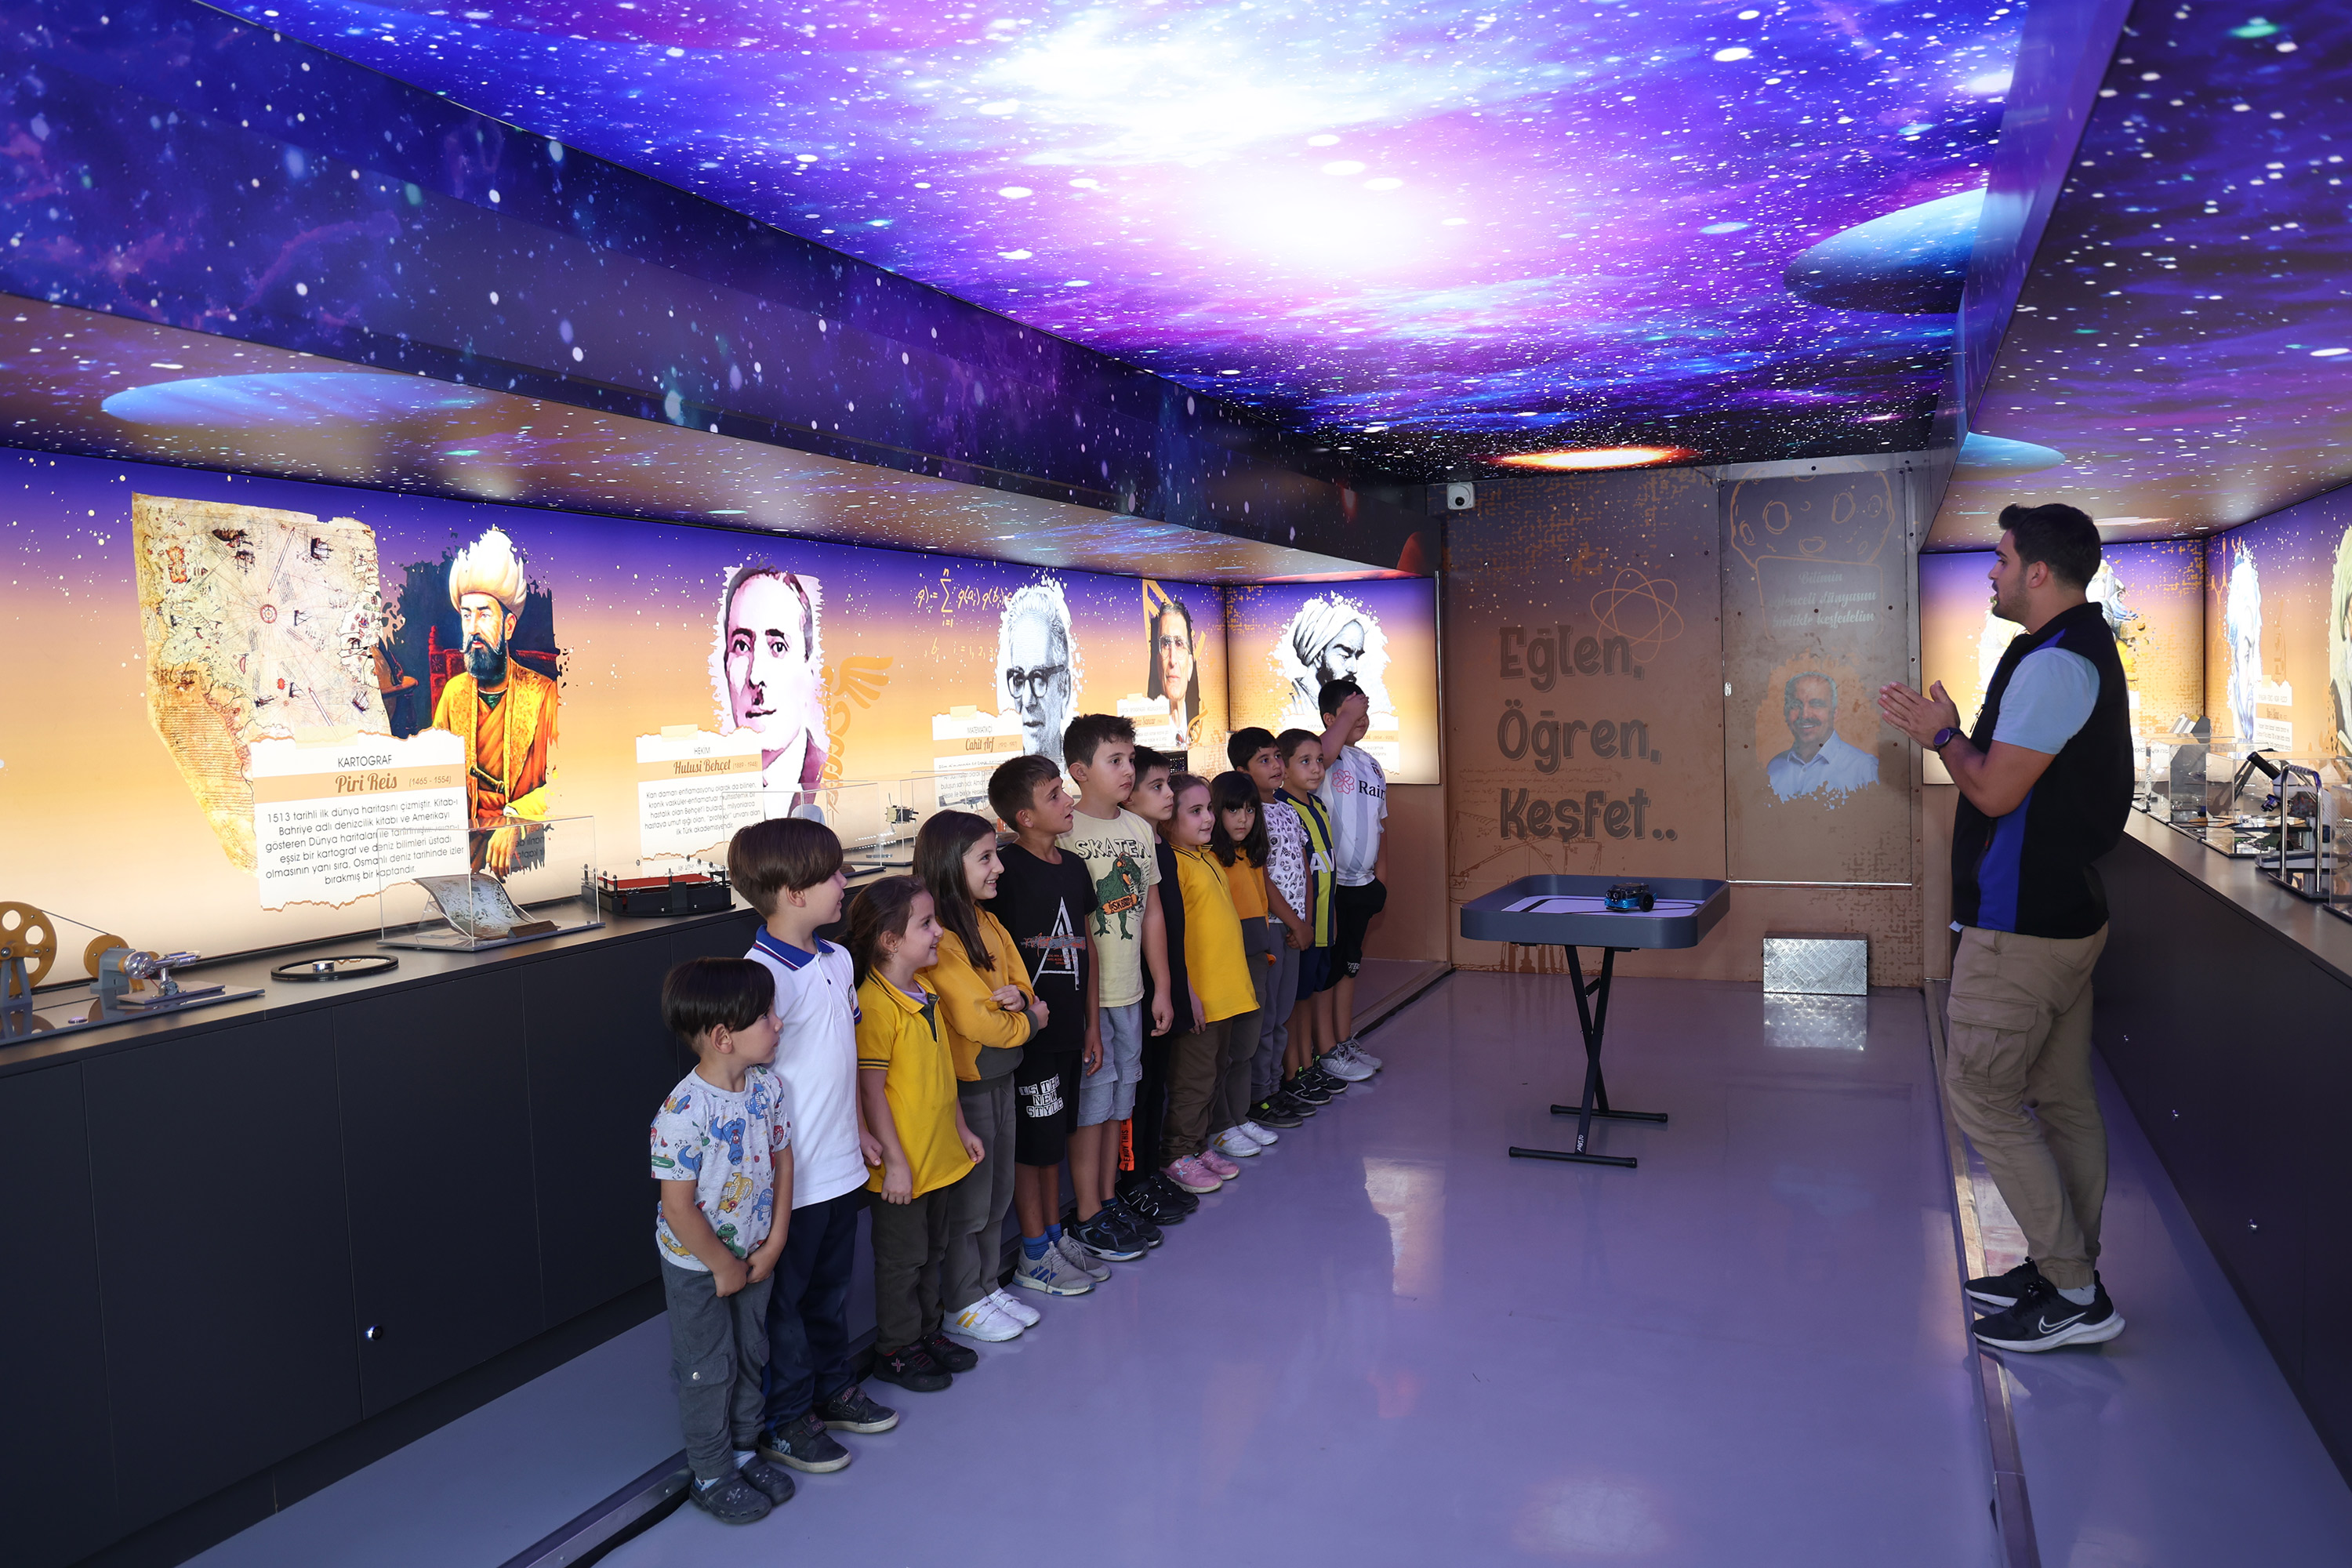 Başkan Altay: “Bilim tırımız yenilenen yüzüyle çocuklara bilim sevgisi aşılıyor”